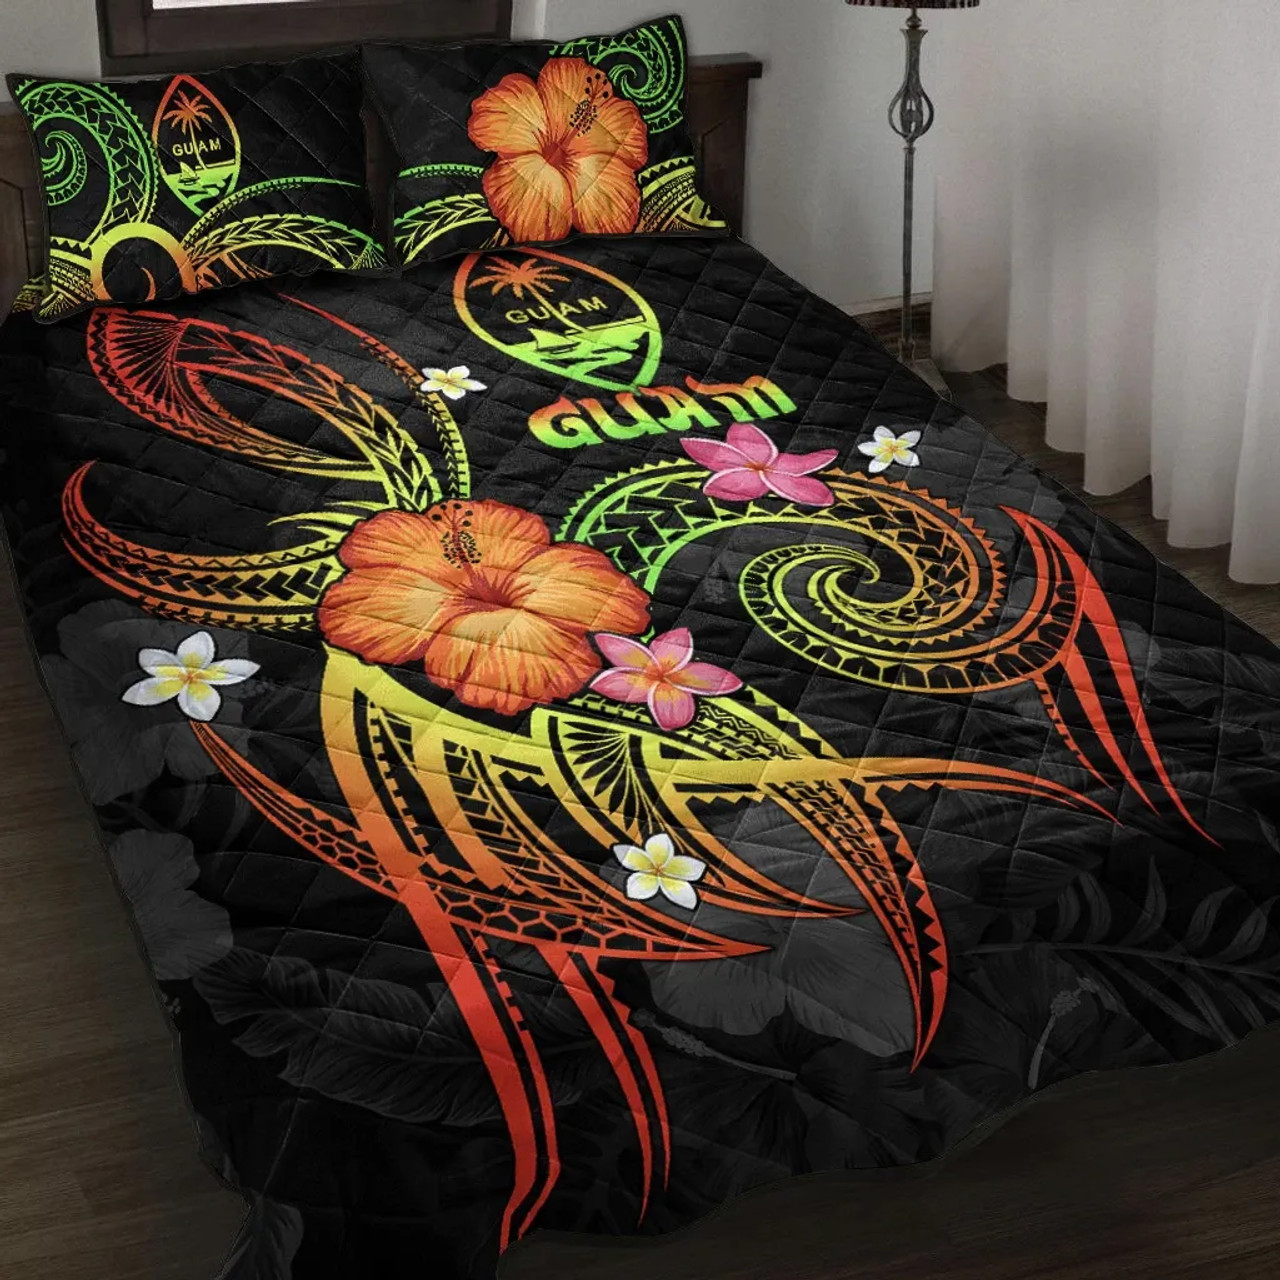 Guam Polynesian Quilt Bed Set - Legend of Guam (Reggae) 1